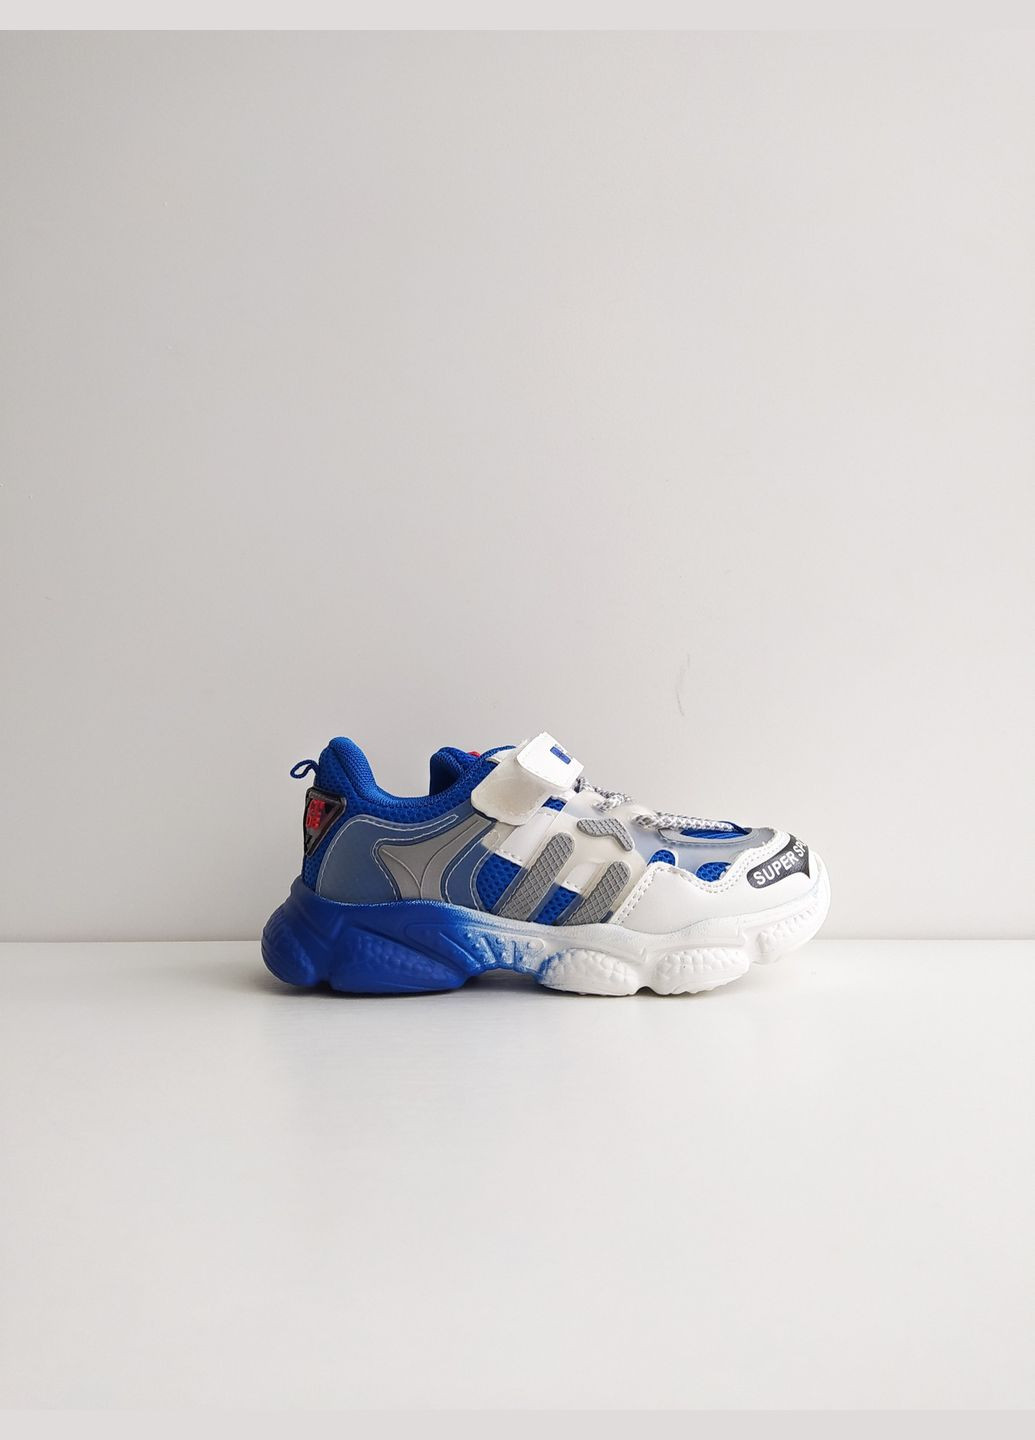 Синій дитячі кросівки 21 р 13,5 см синій артикул к170 Kimbo-O